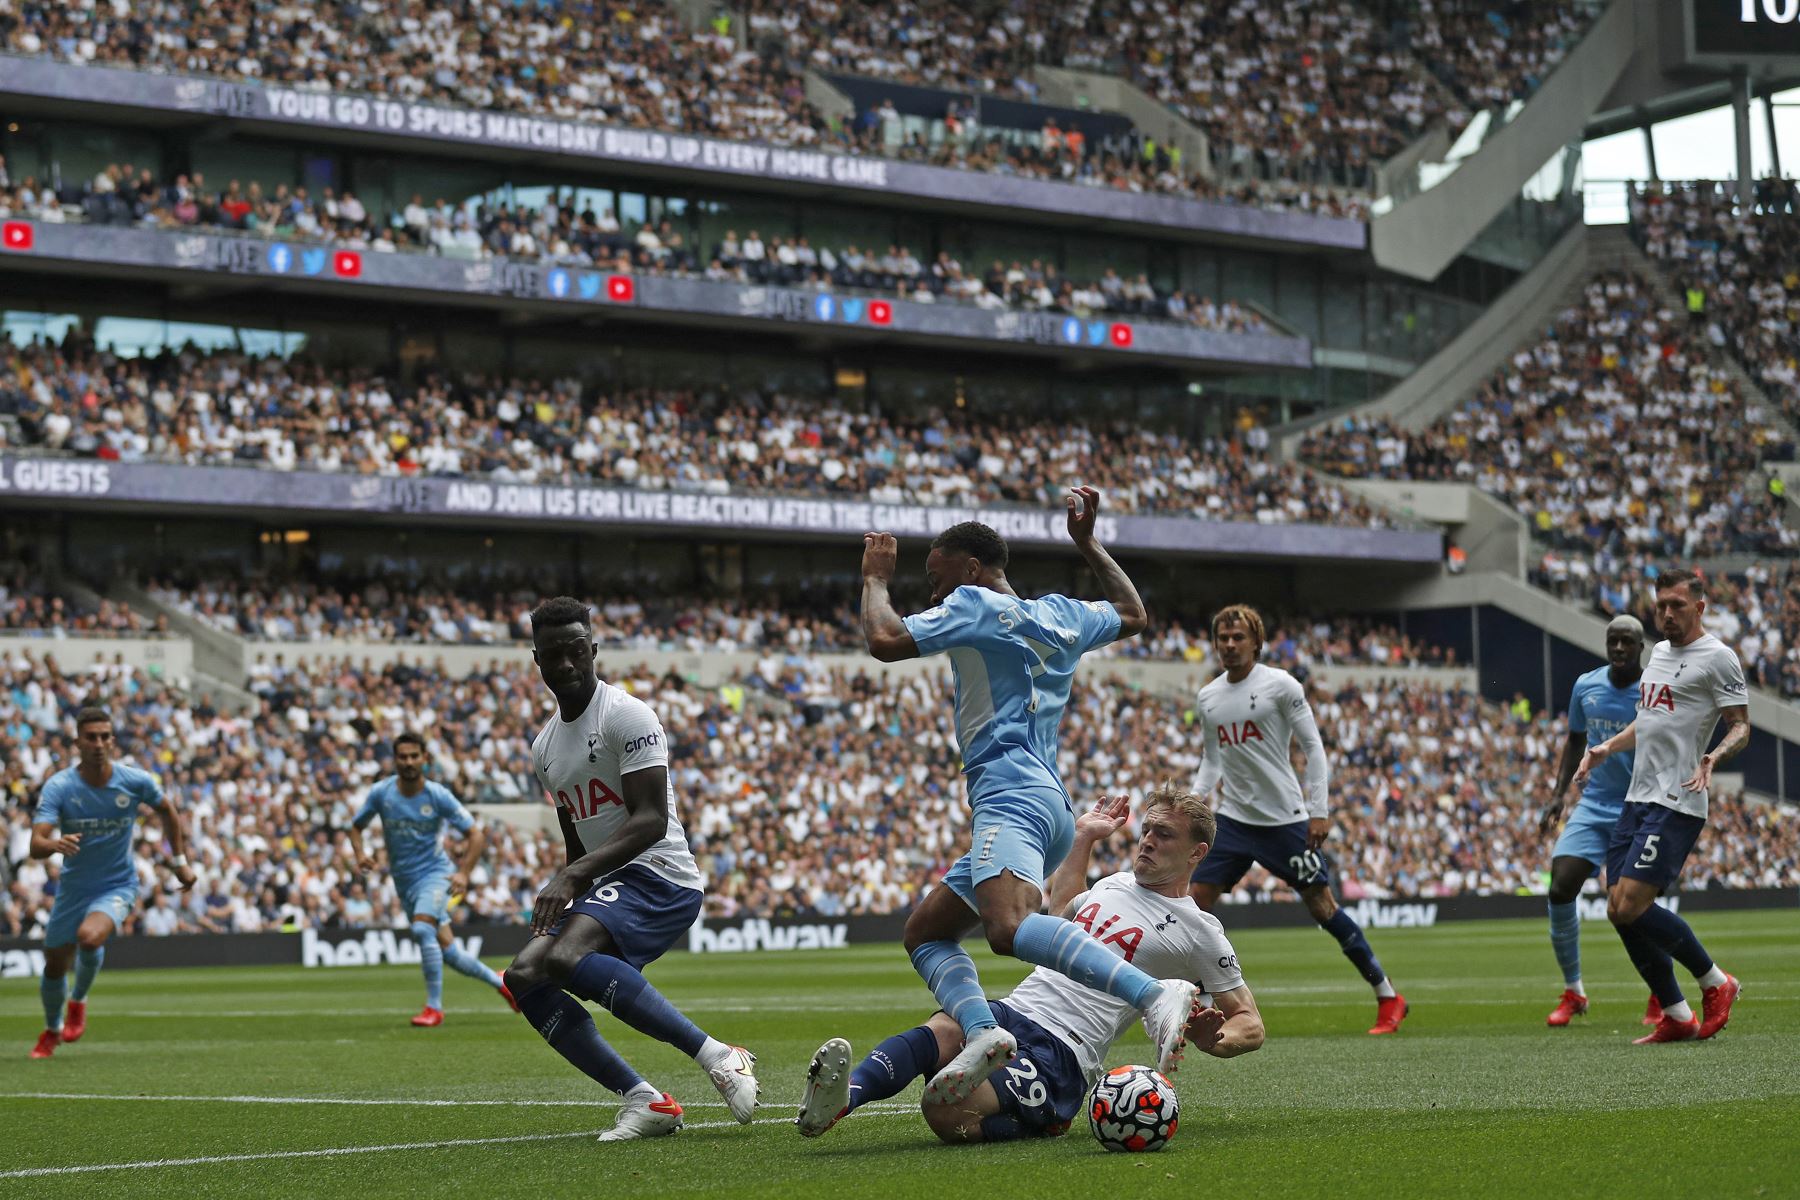 El mediocampista inglés del Tottenham Hotspur, Oliver Skipp, desafía al mediocampista inglés del Manchester City, Raheem Sterling, durante el partido por la Premier League, en Londres. Foto: AFP